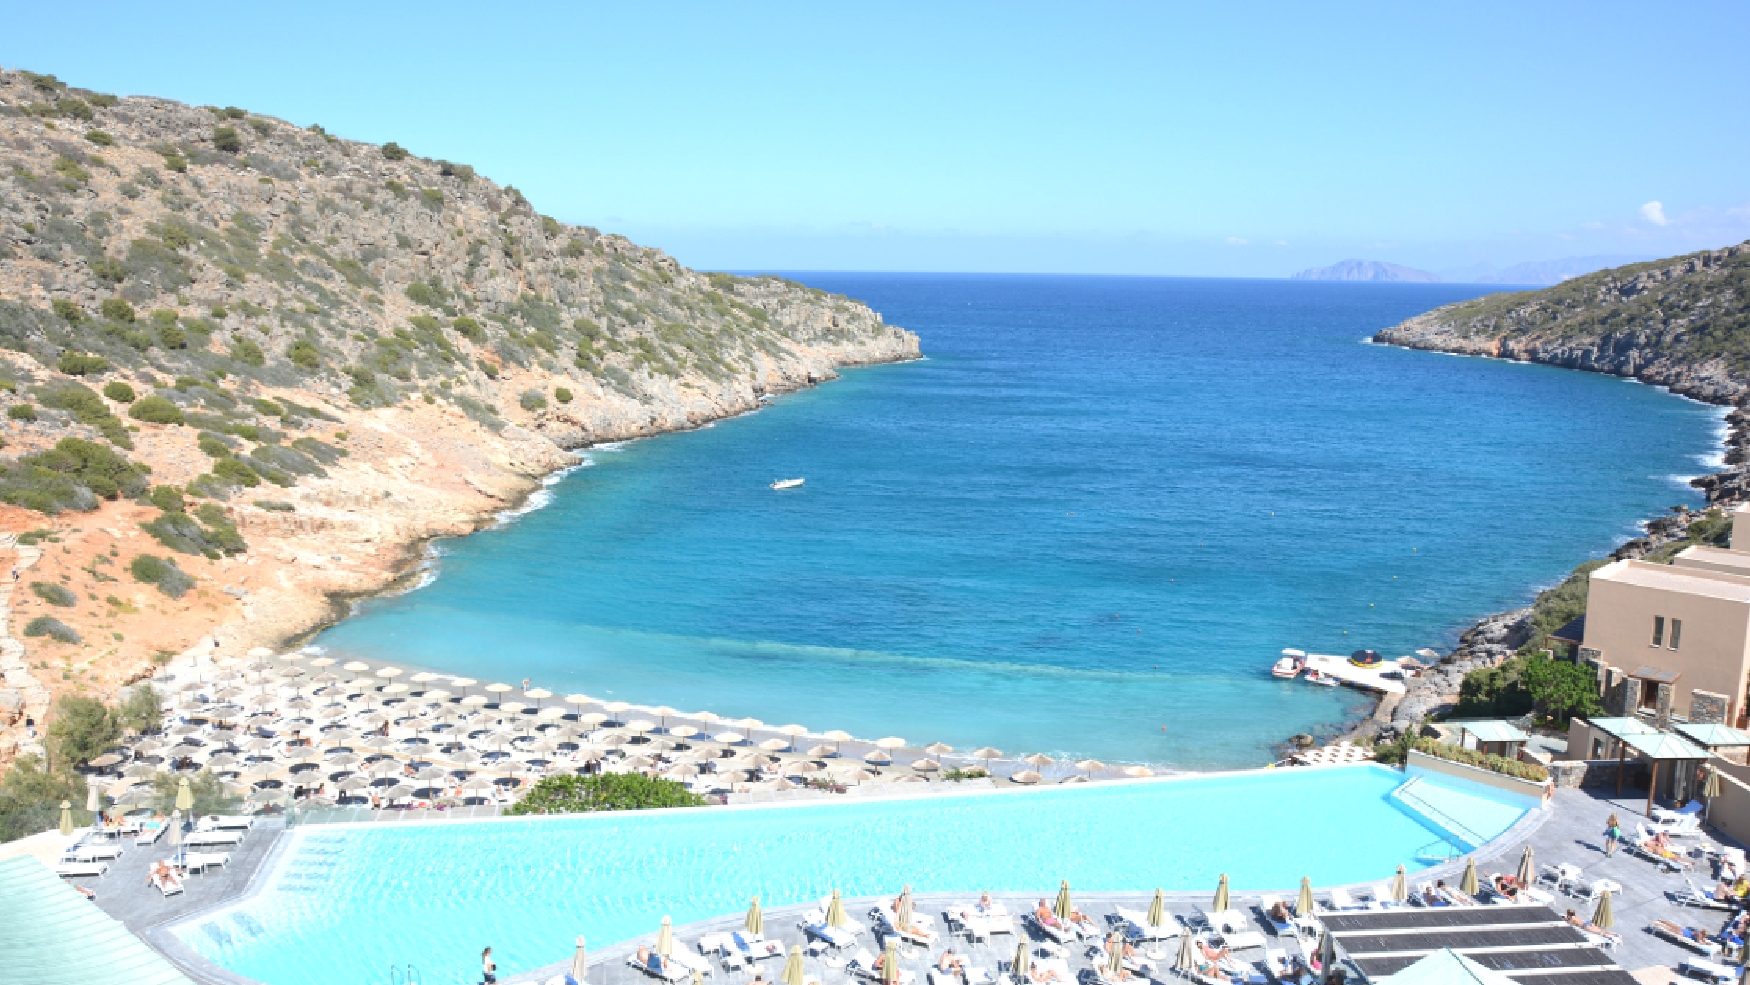 Aussicht vom Hotel auf Kreta